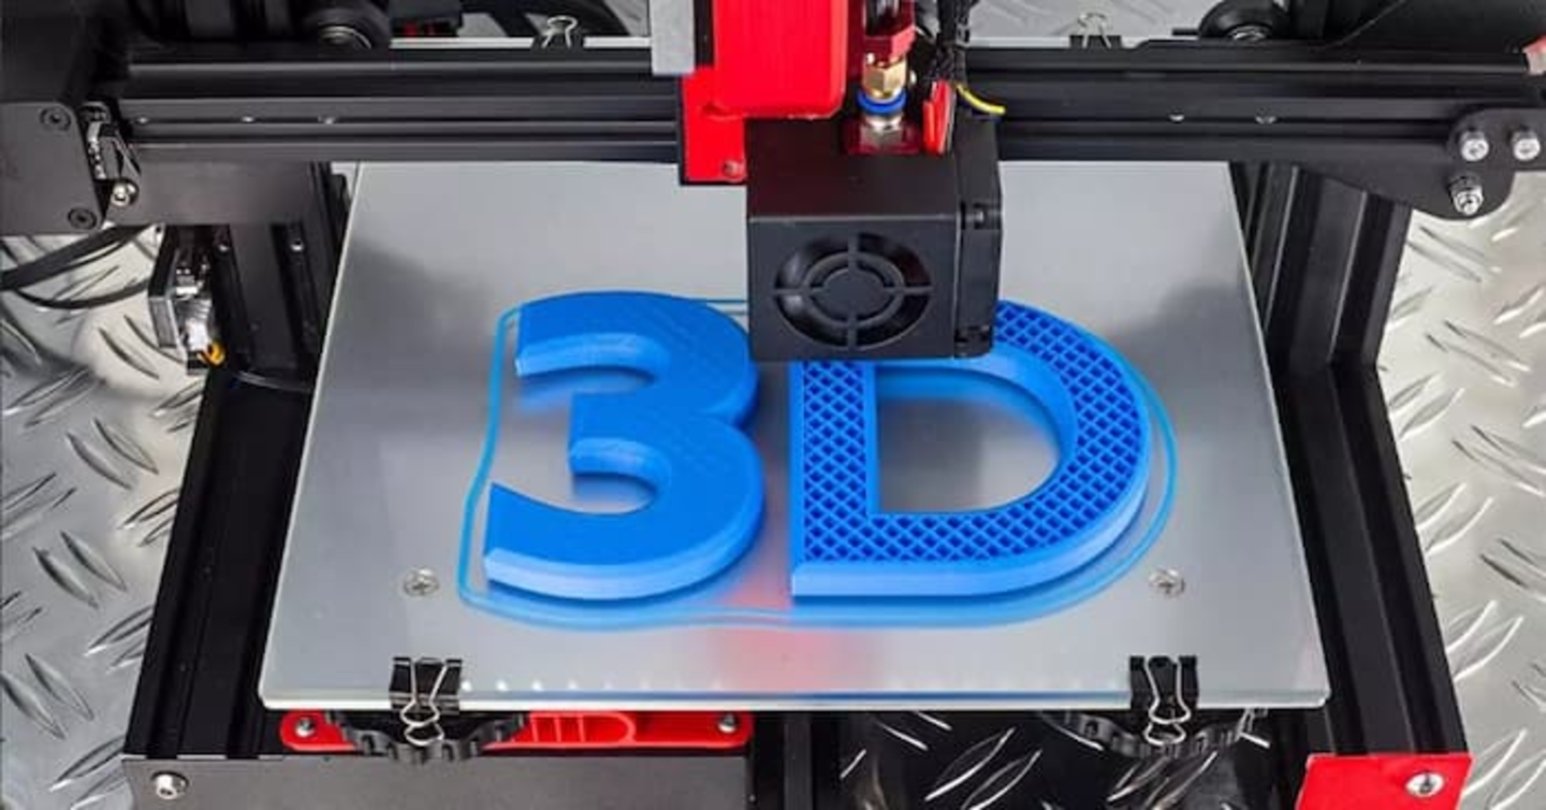 Así es el funcionamiento de una impresora 3D, muy sencillo, pero a su vez, complejo